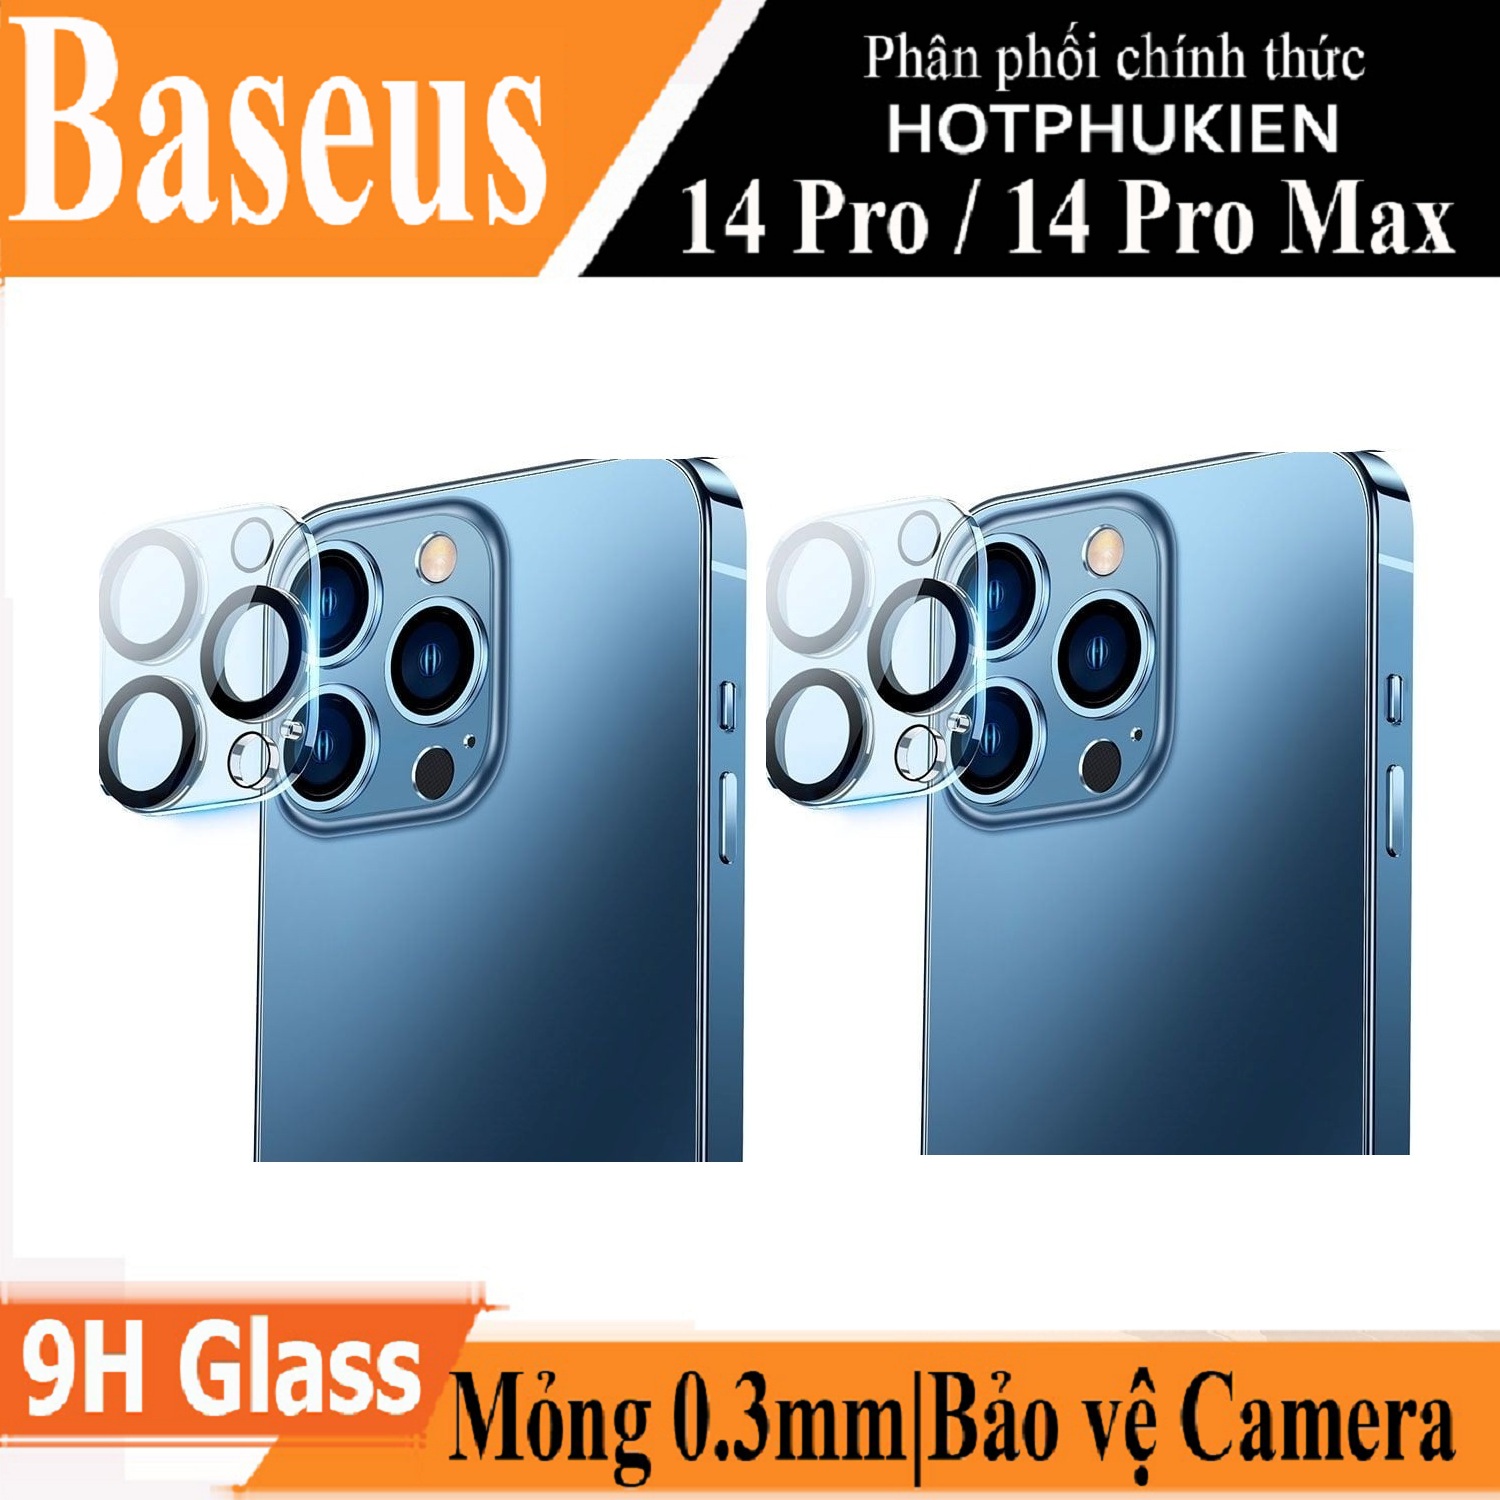 (Mua 1 tặng 1) Miếng dán kính cường lực bảo vệ camera cho iPhone 14 Pro hiệu Baseus Full-coverage Lens